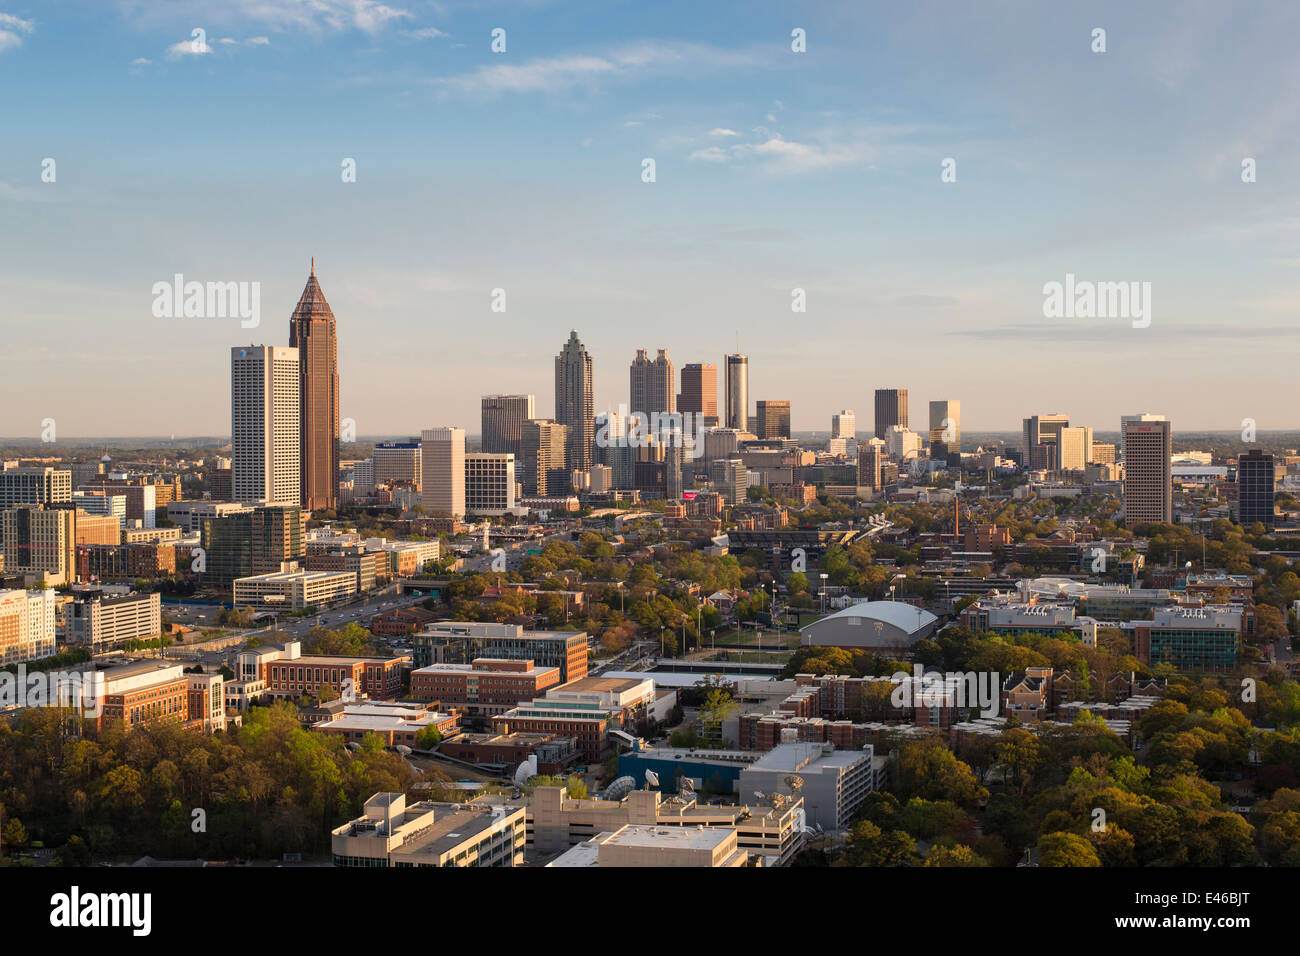 Vista in elevazione sulla Interstate 85 passando la skyline di Atlanta, Atlanta, Georgia, Stati Uniti d'America Foto Stock